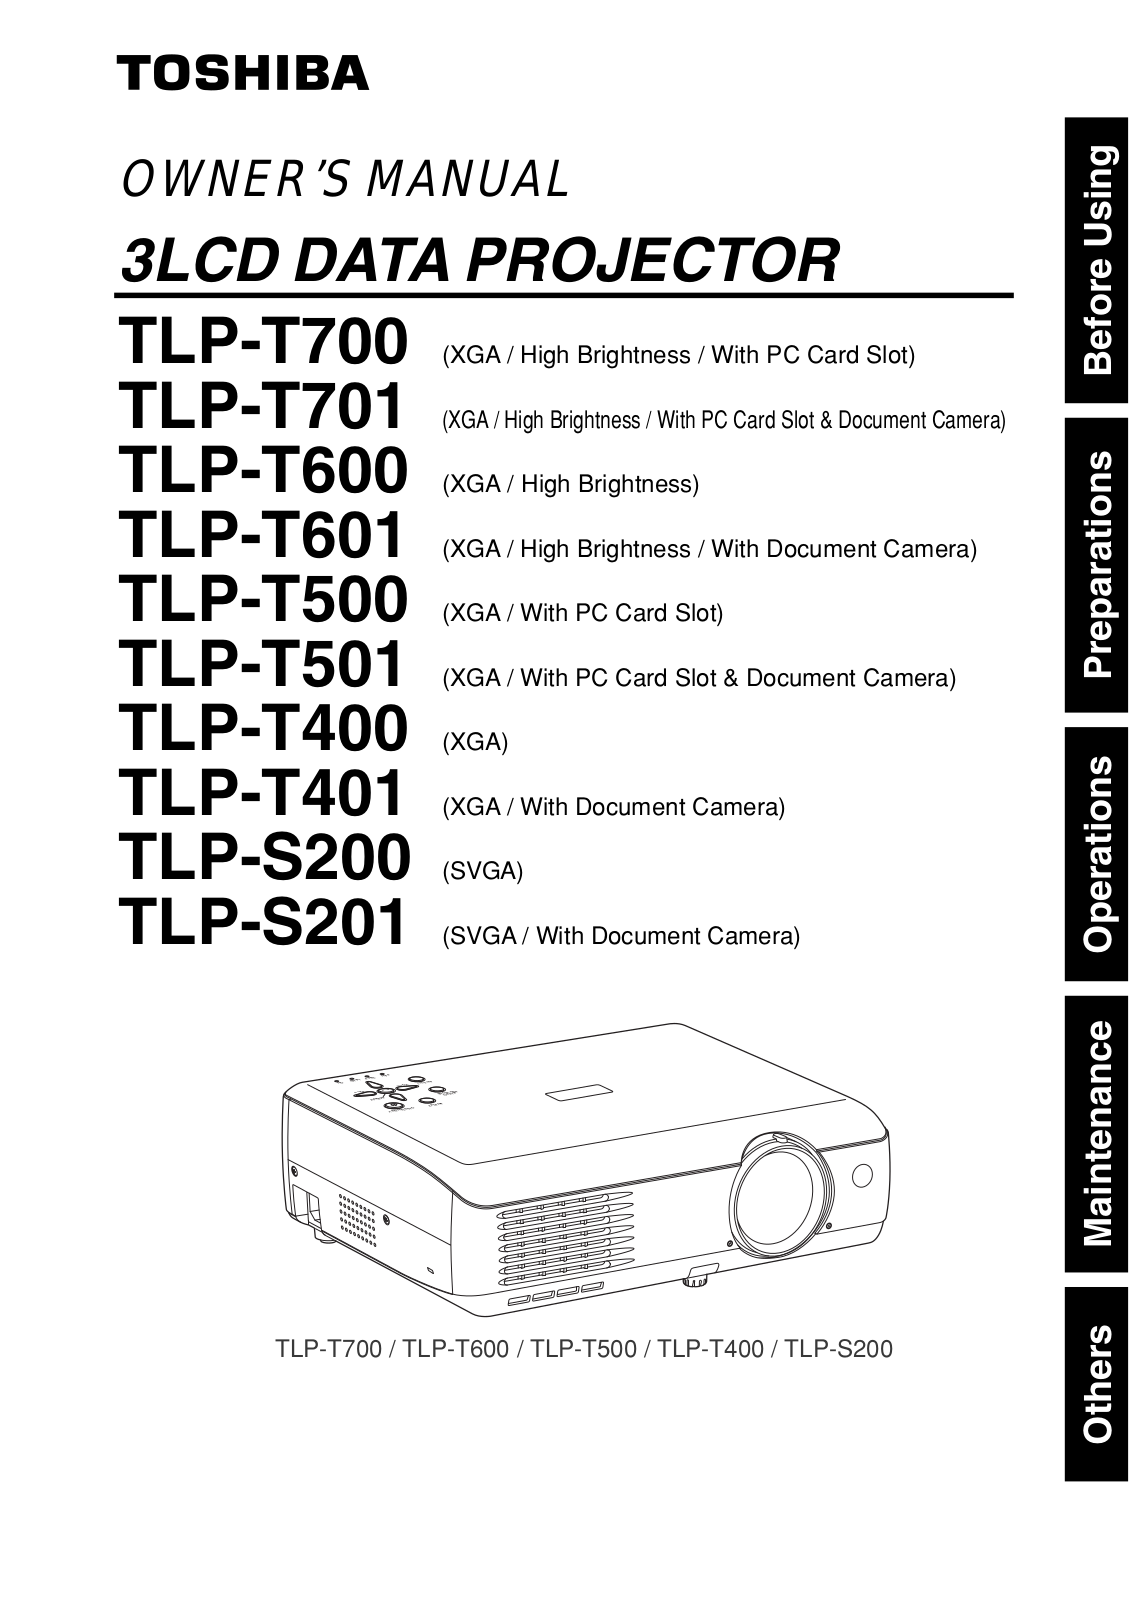 Toshiba TLP-T701, TLP-T501, TLP-T400, TLP-T500, TLP-T401 User Manual